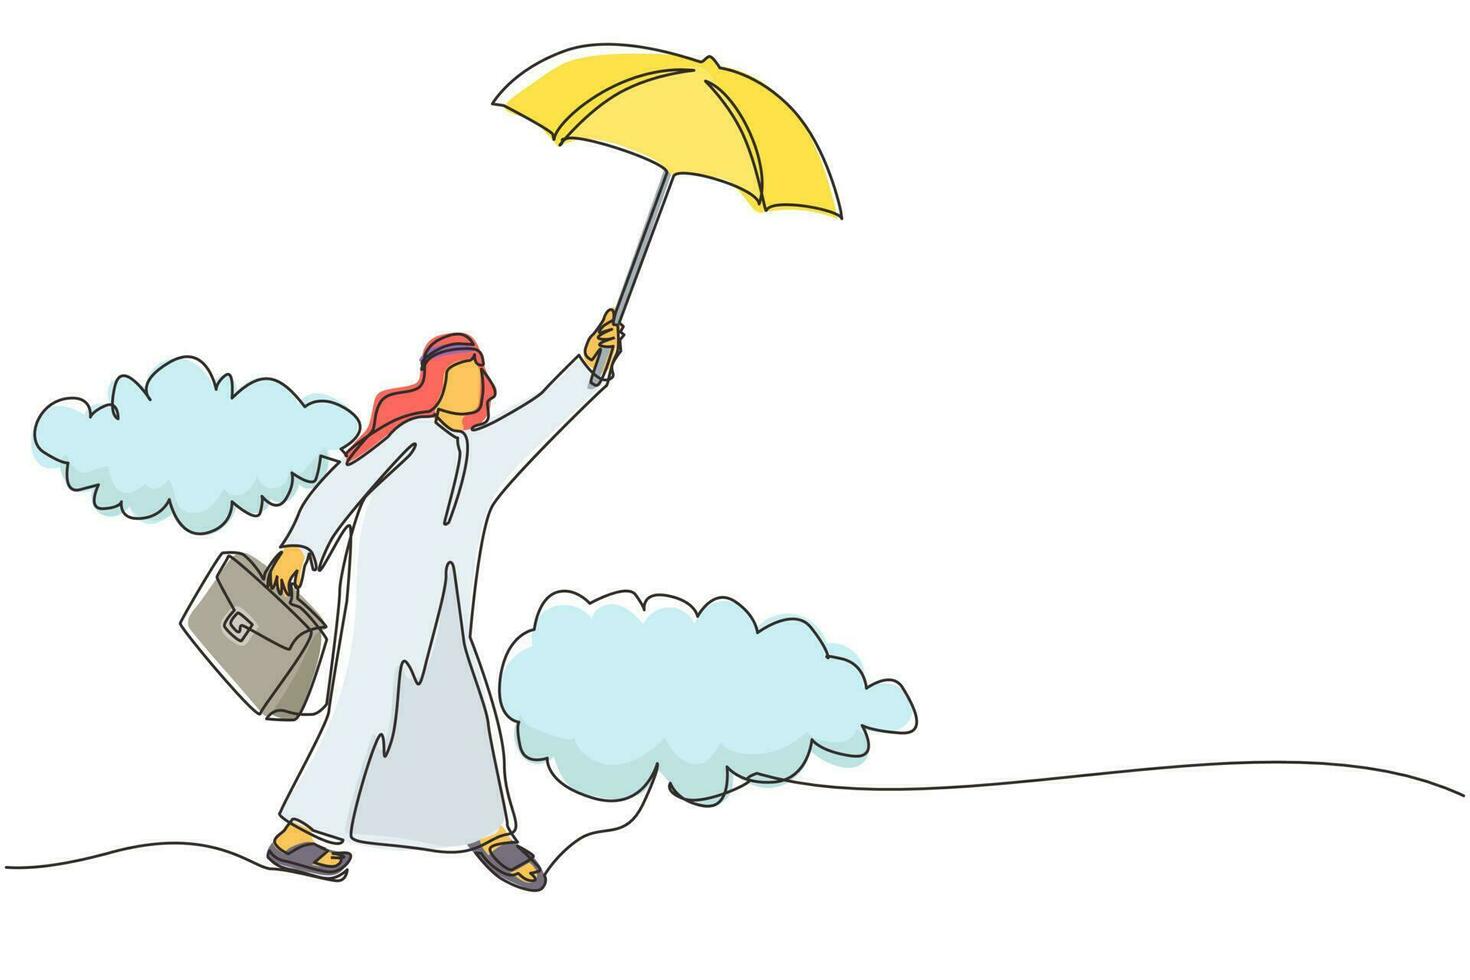 dessin en ligne continue unique heureux homme d'affaires arabe riche volant avec son parapluie tenant une mallette. employé de bureau atteindre l'indépendance financière. une ligne dessiner illustration vectorielle de conception graphique vecteur